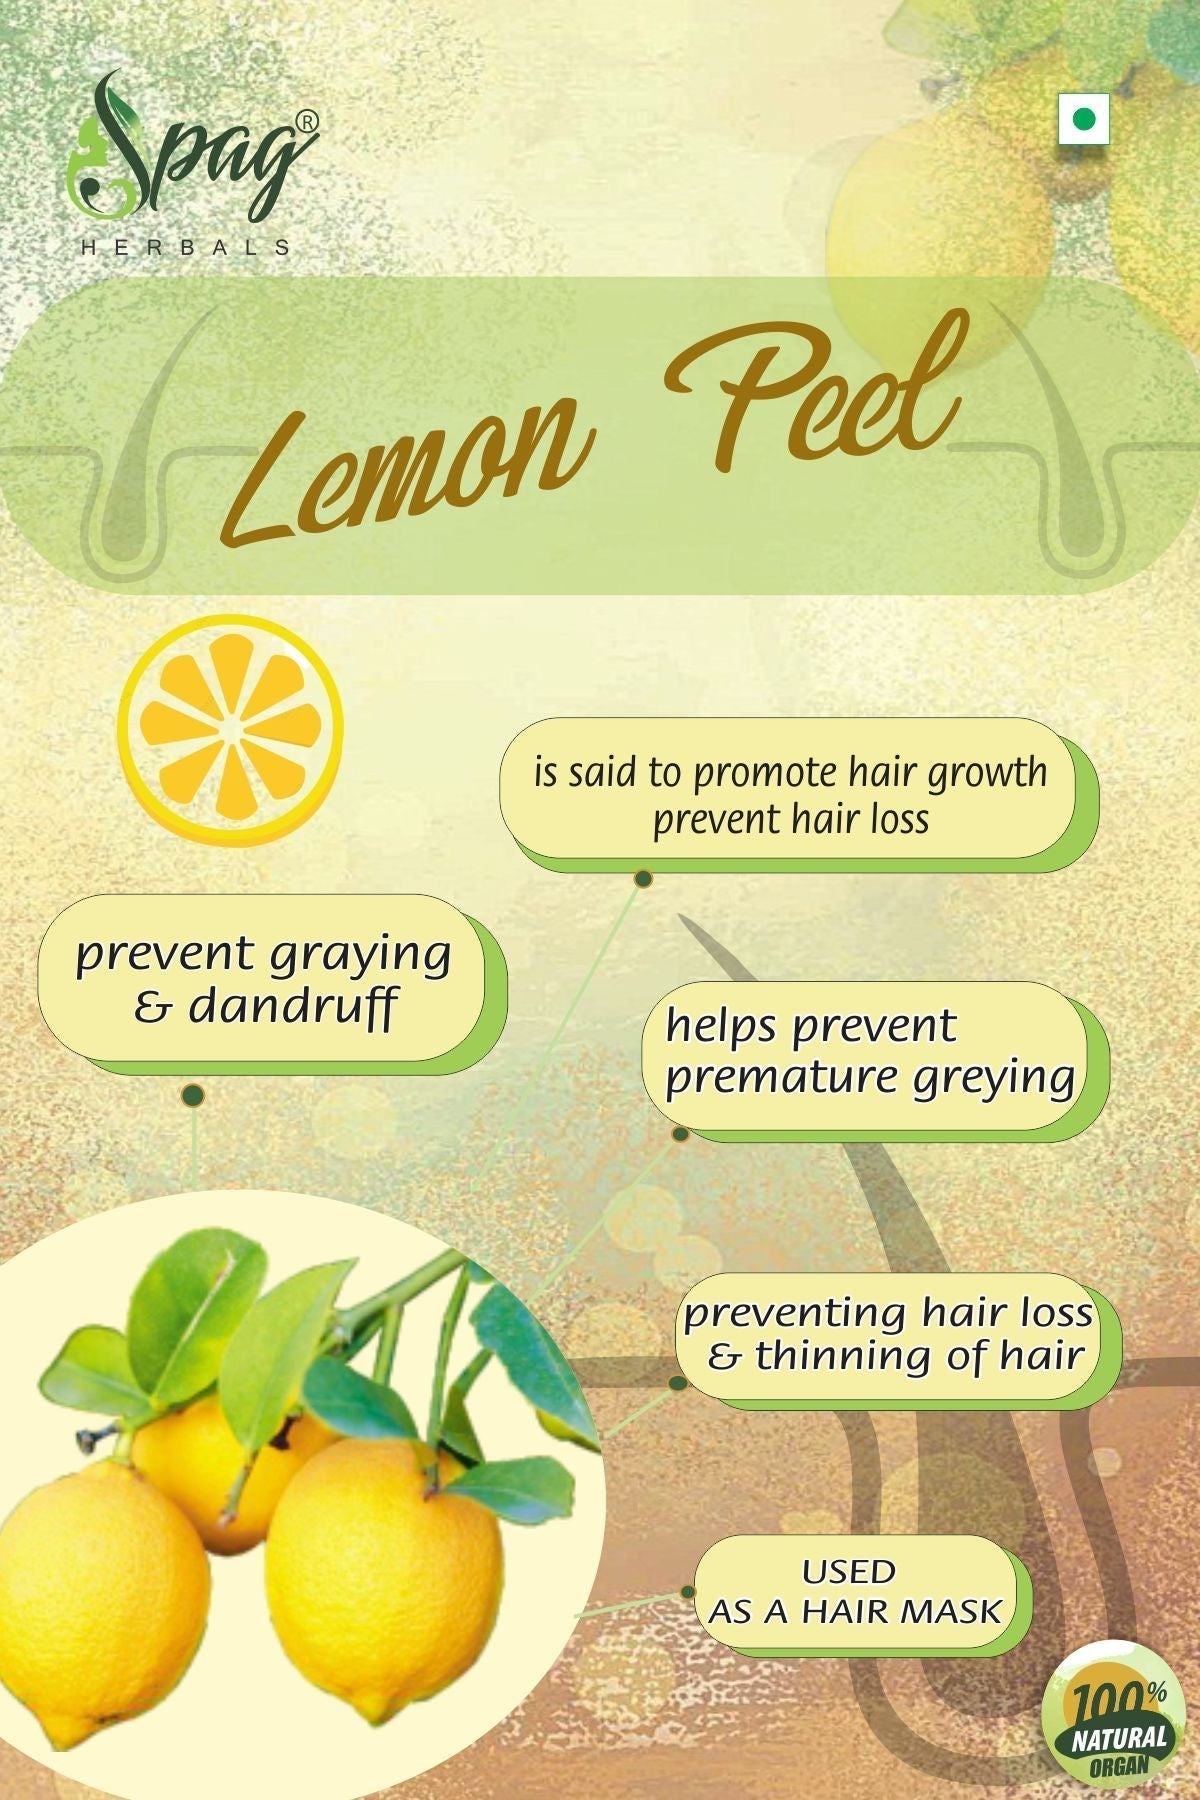 Spag Herbals Premium Lemon Peel Powder